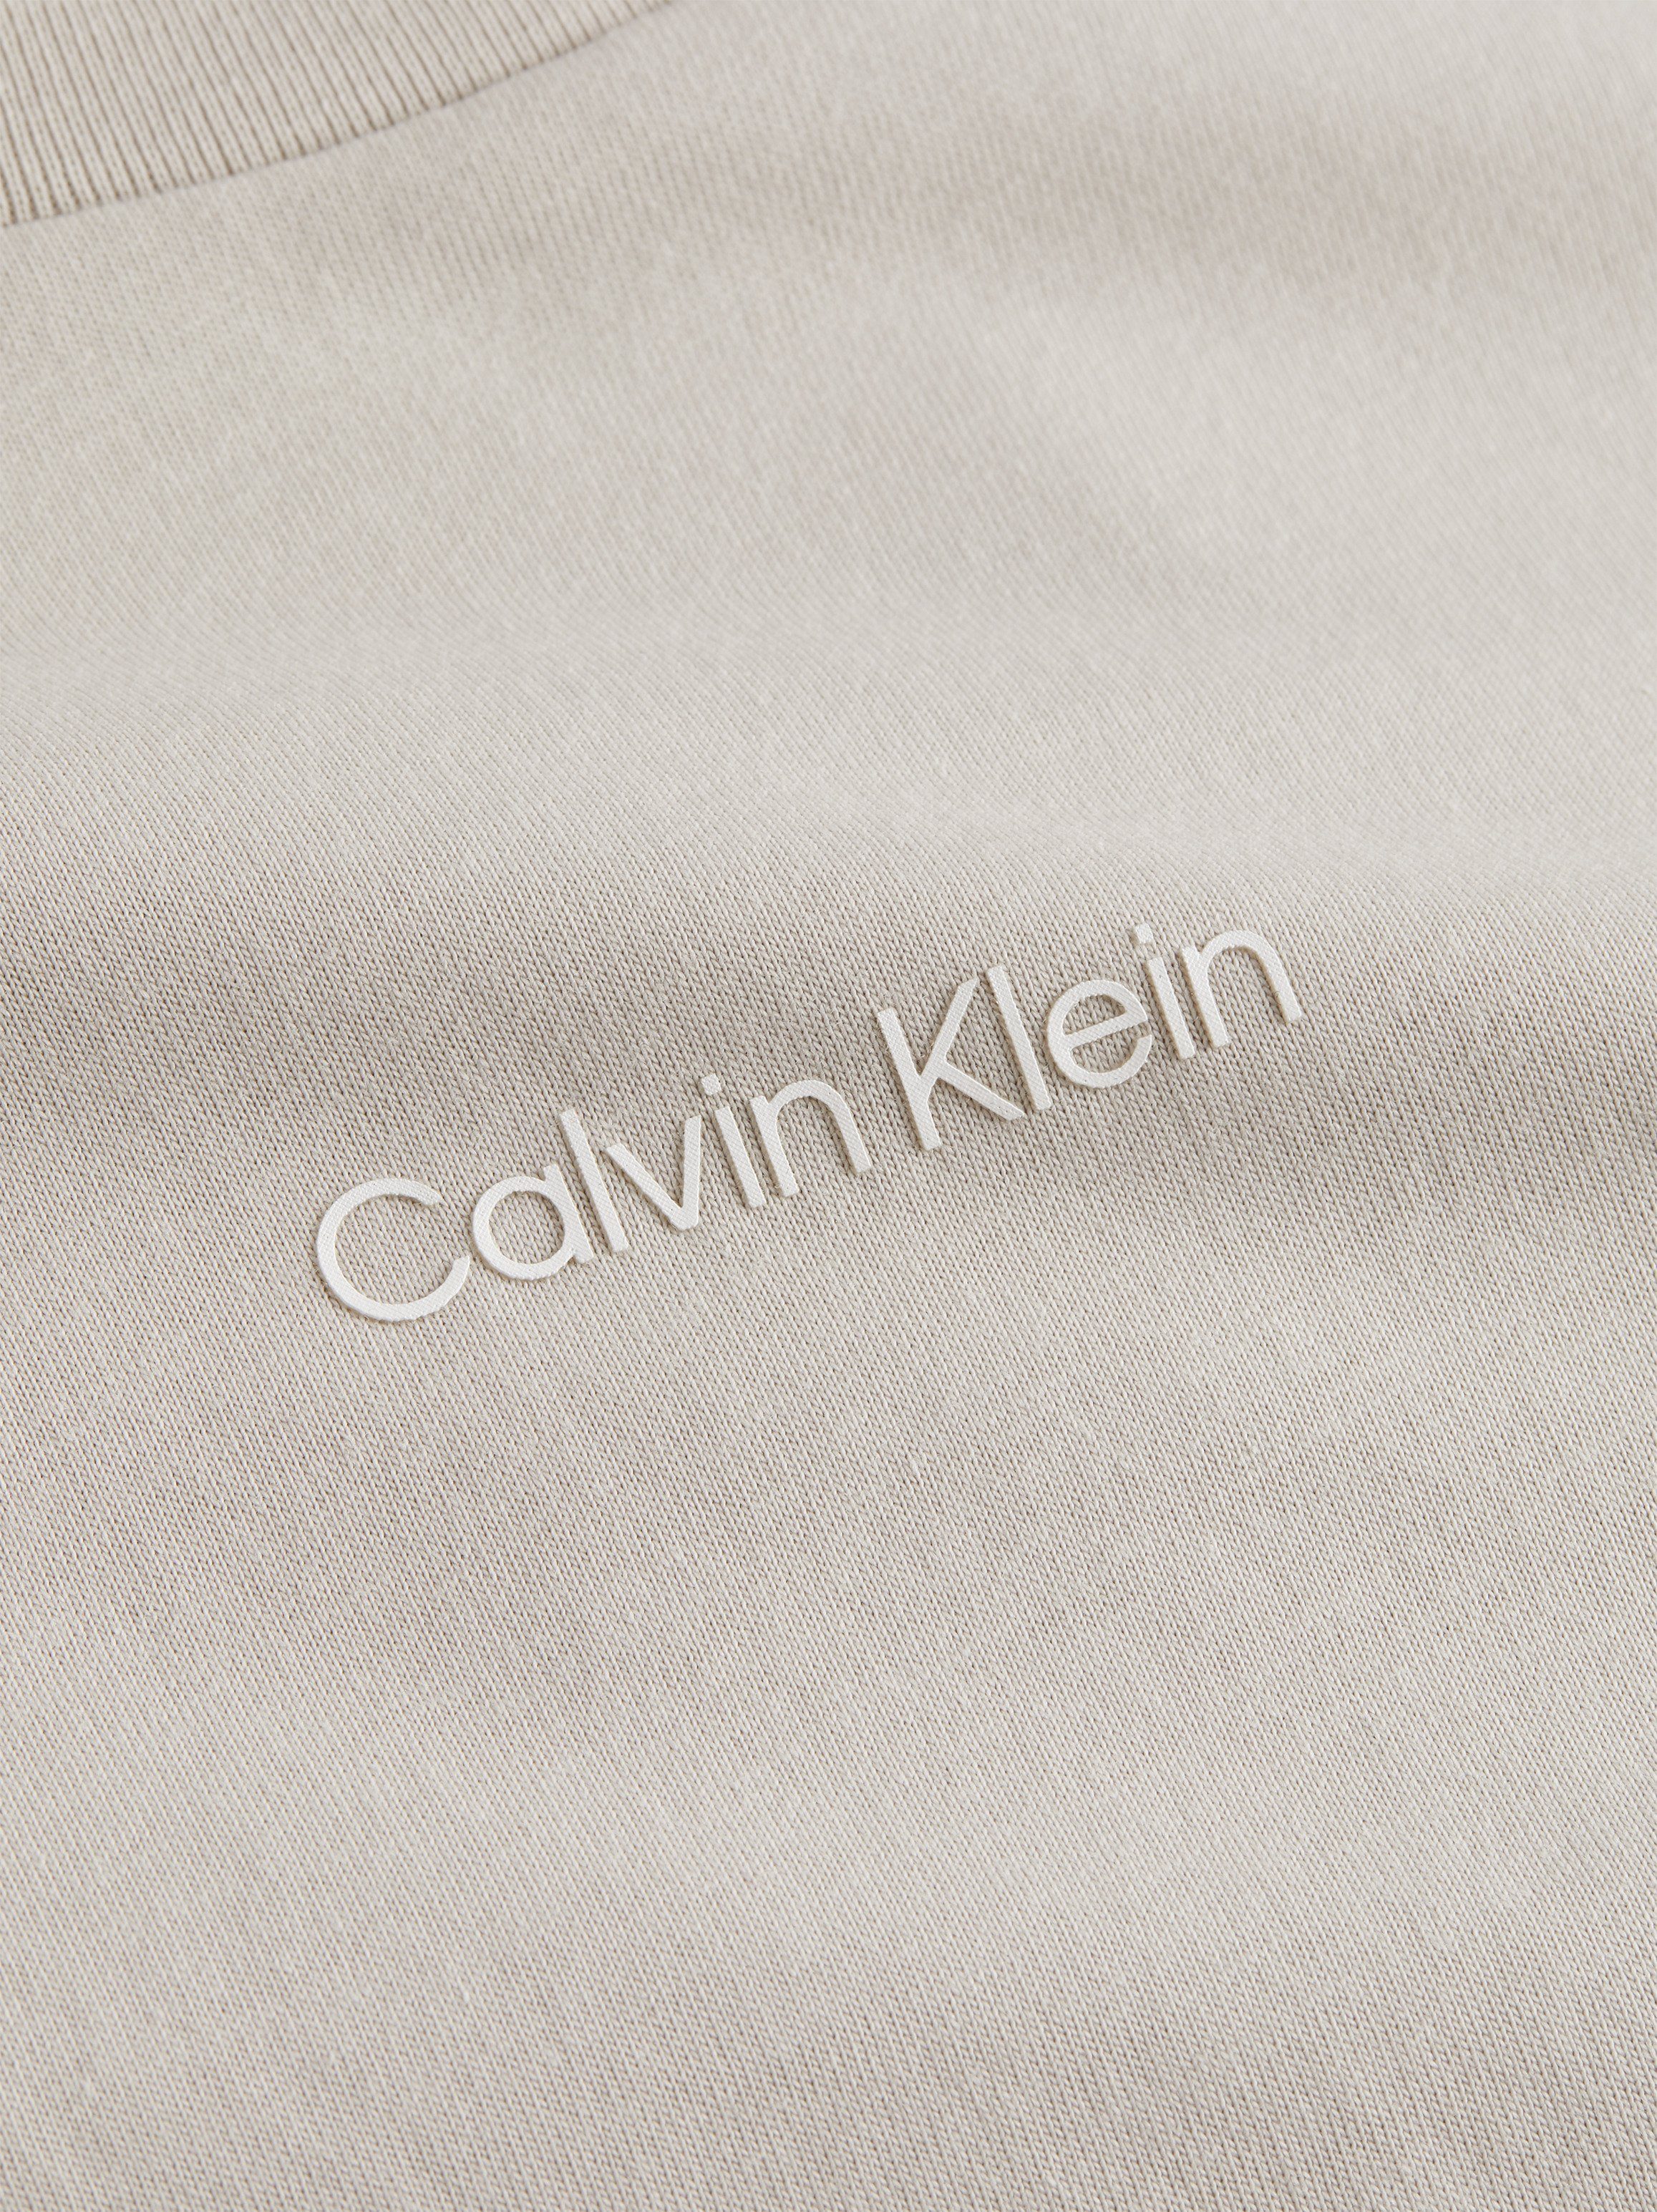 Calvin Klein T-Shirt MICRO Silver Baumwolle T-SHIRT Gray LOGO aus reiner